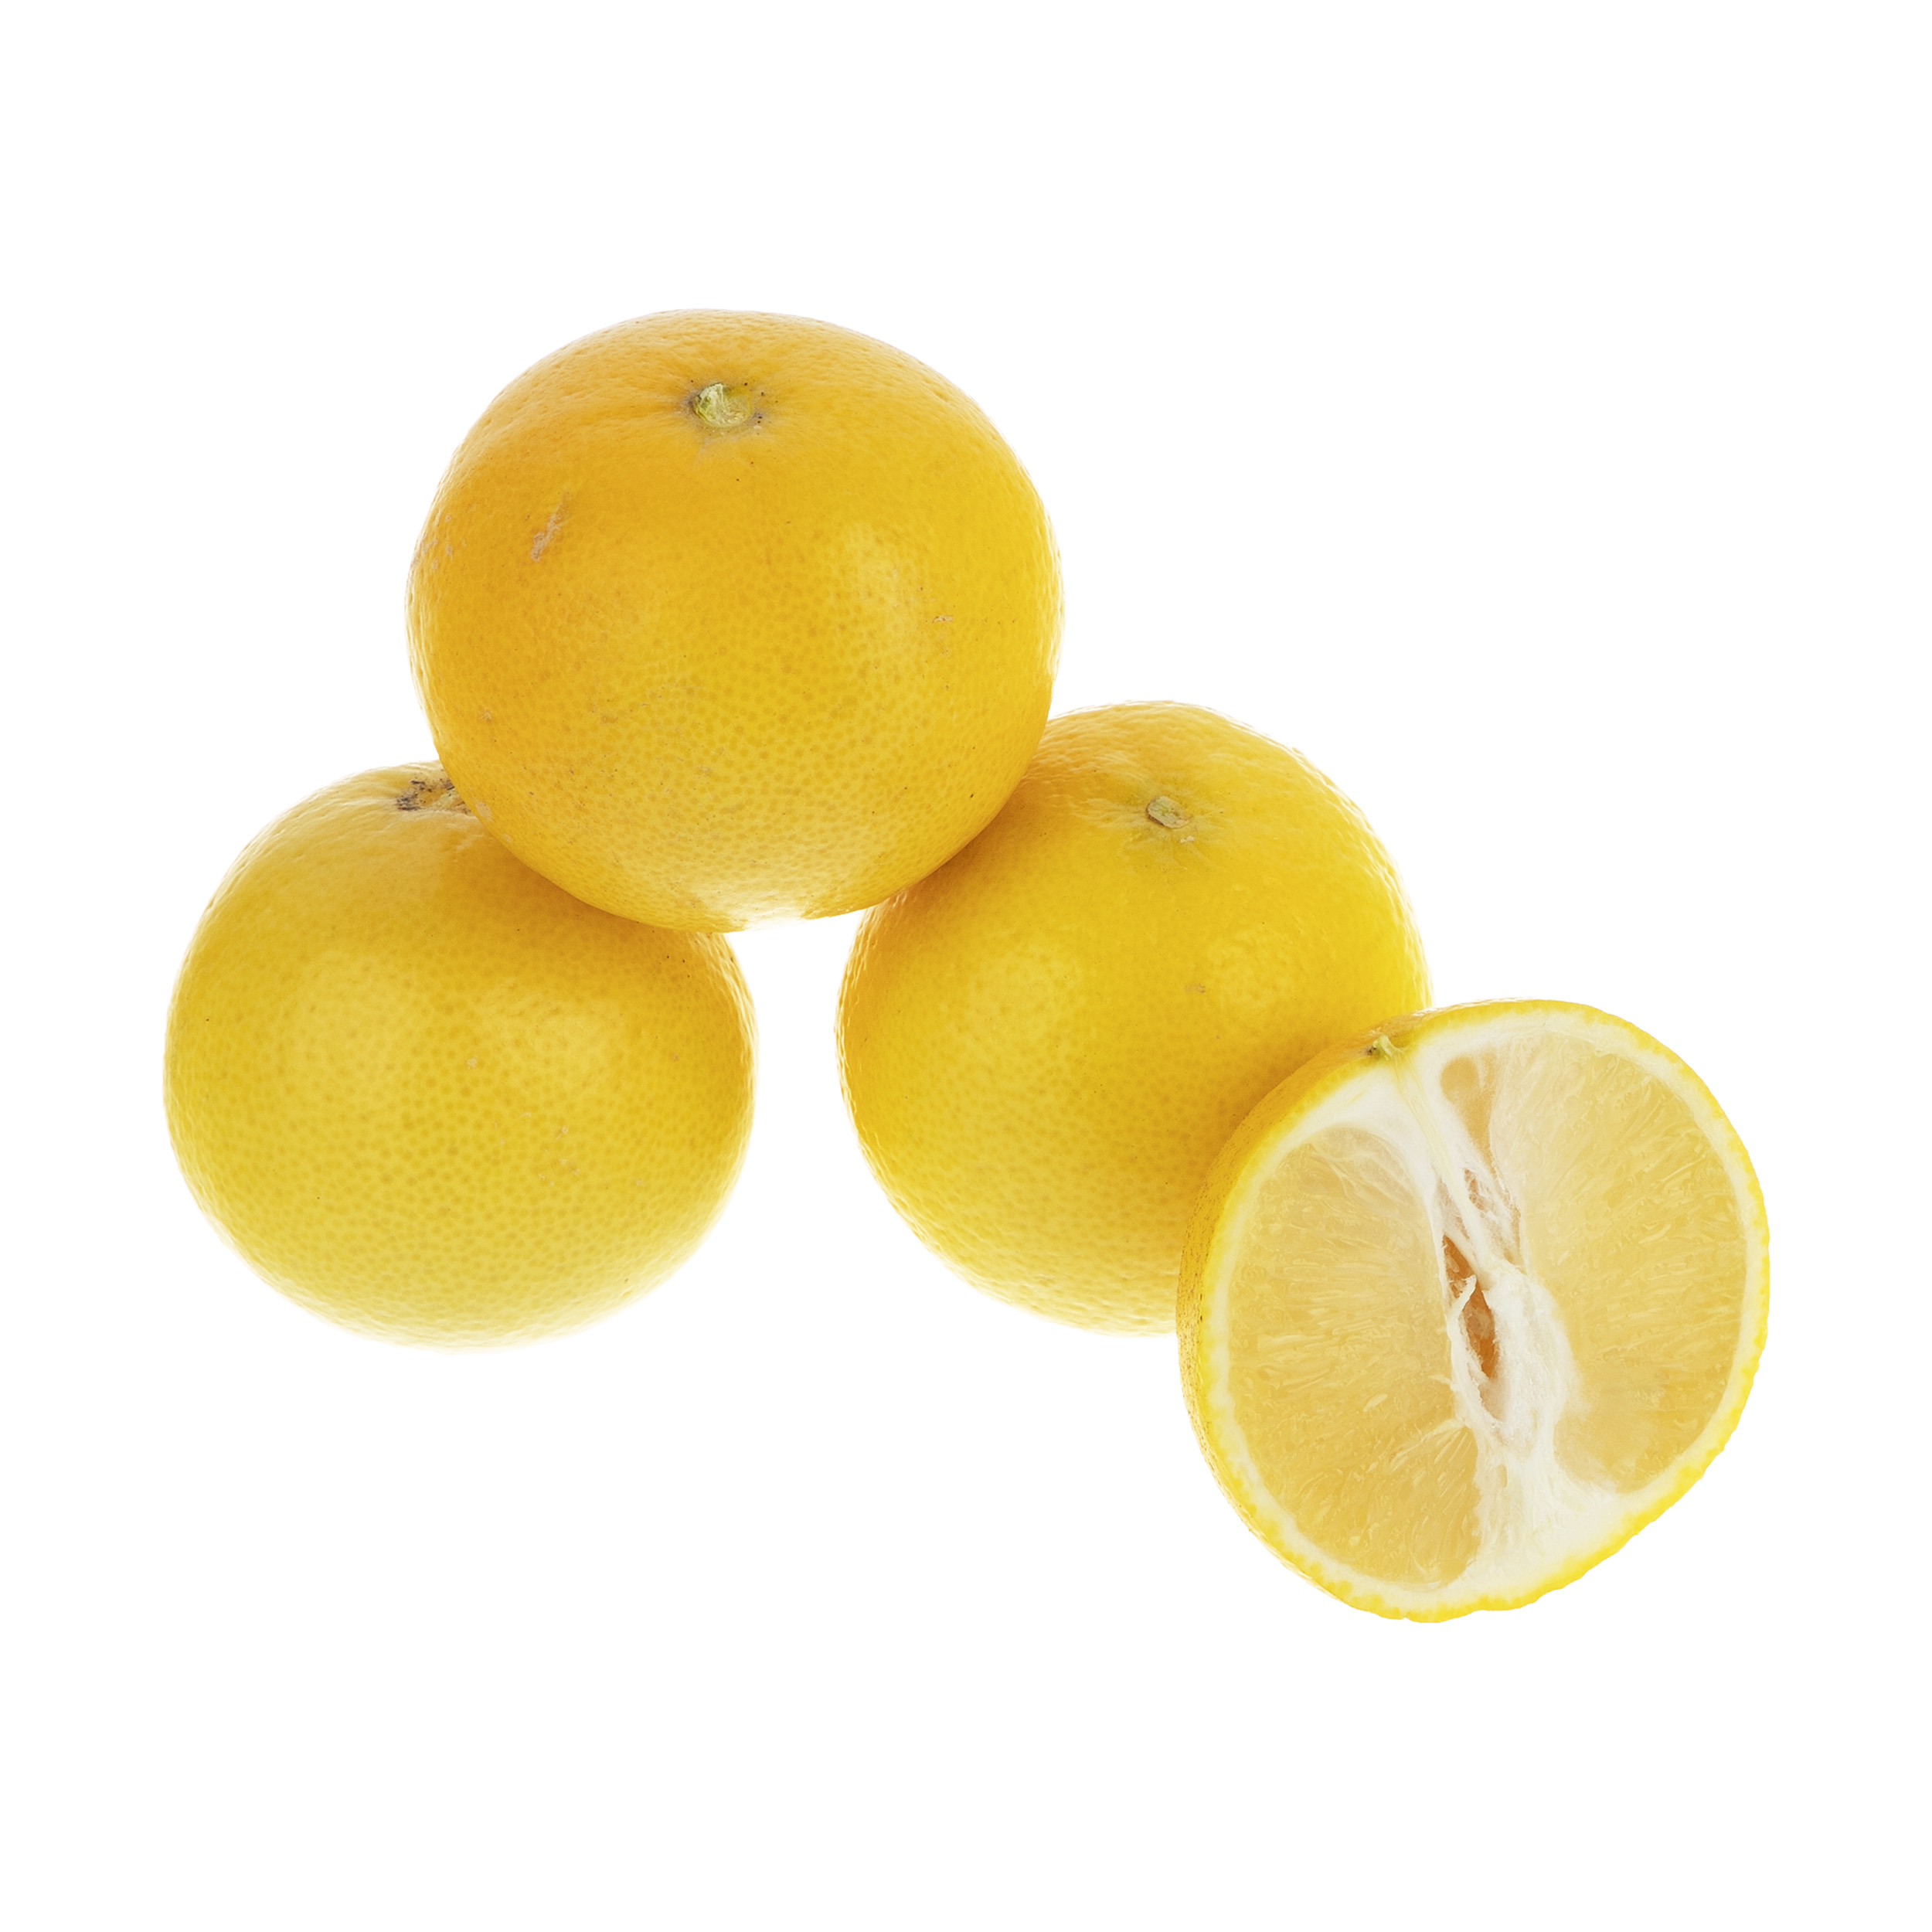 لیمو شیرین بلوط - 1 کیلوگرم